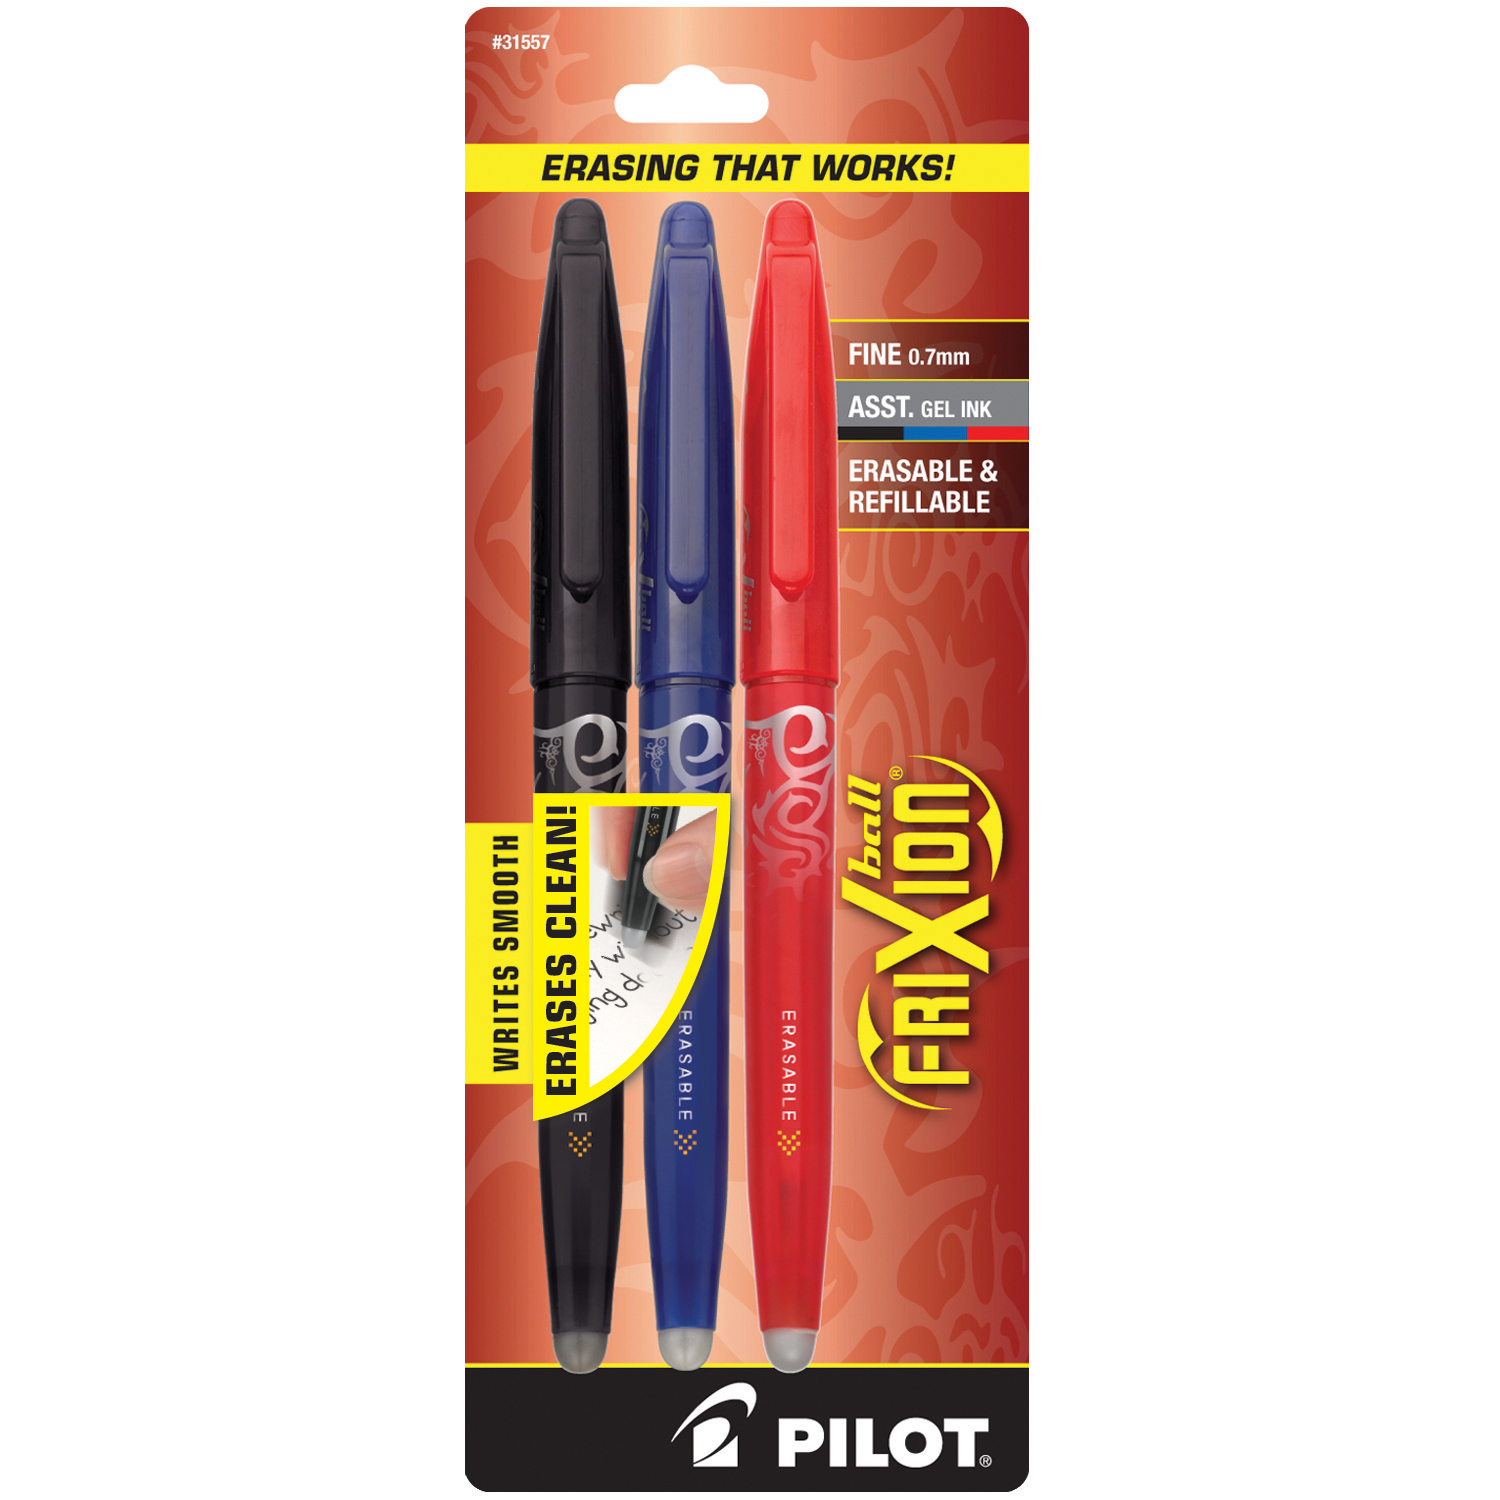 Pilot Frixion Erasable Gel 3 Pack Blk/Red/Blu